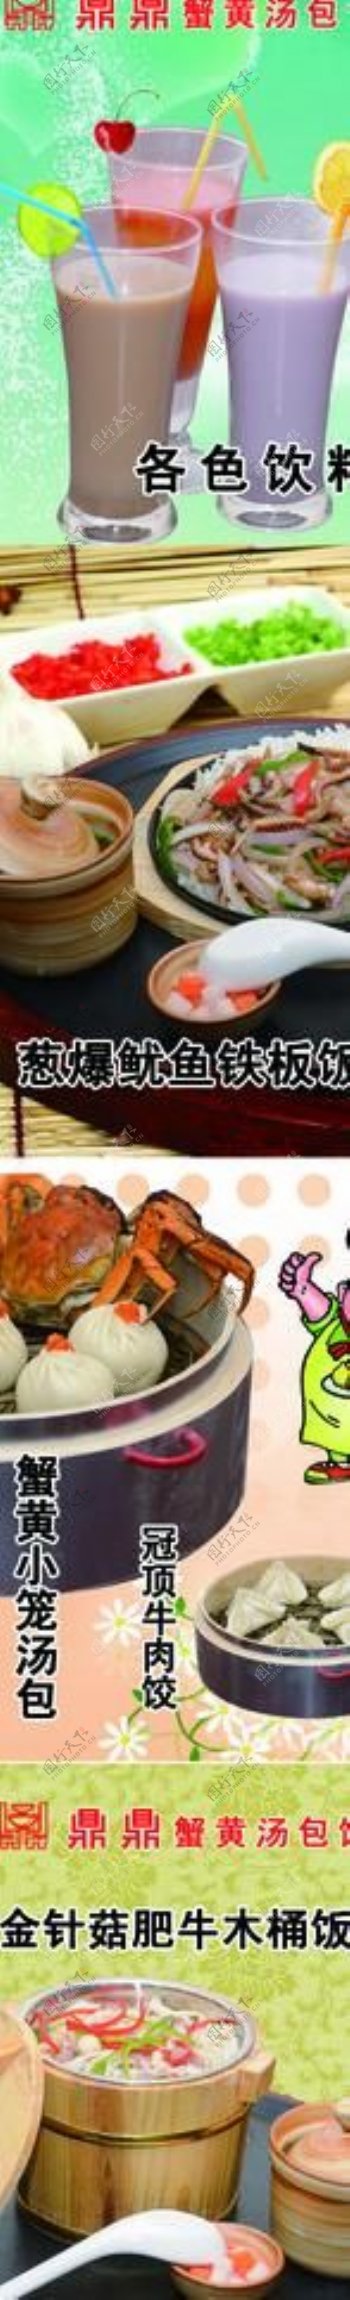 蟹黄汤包菜谱图片